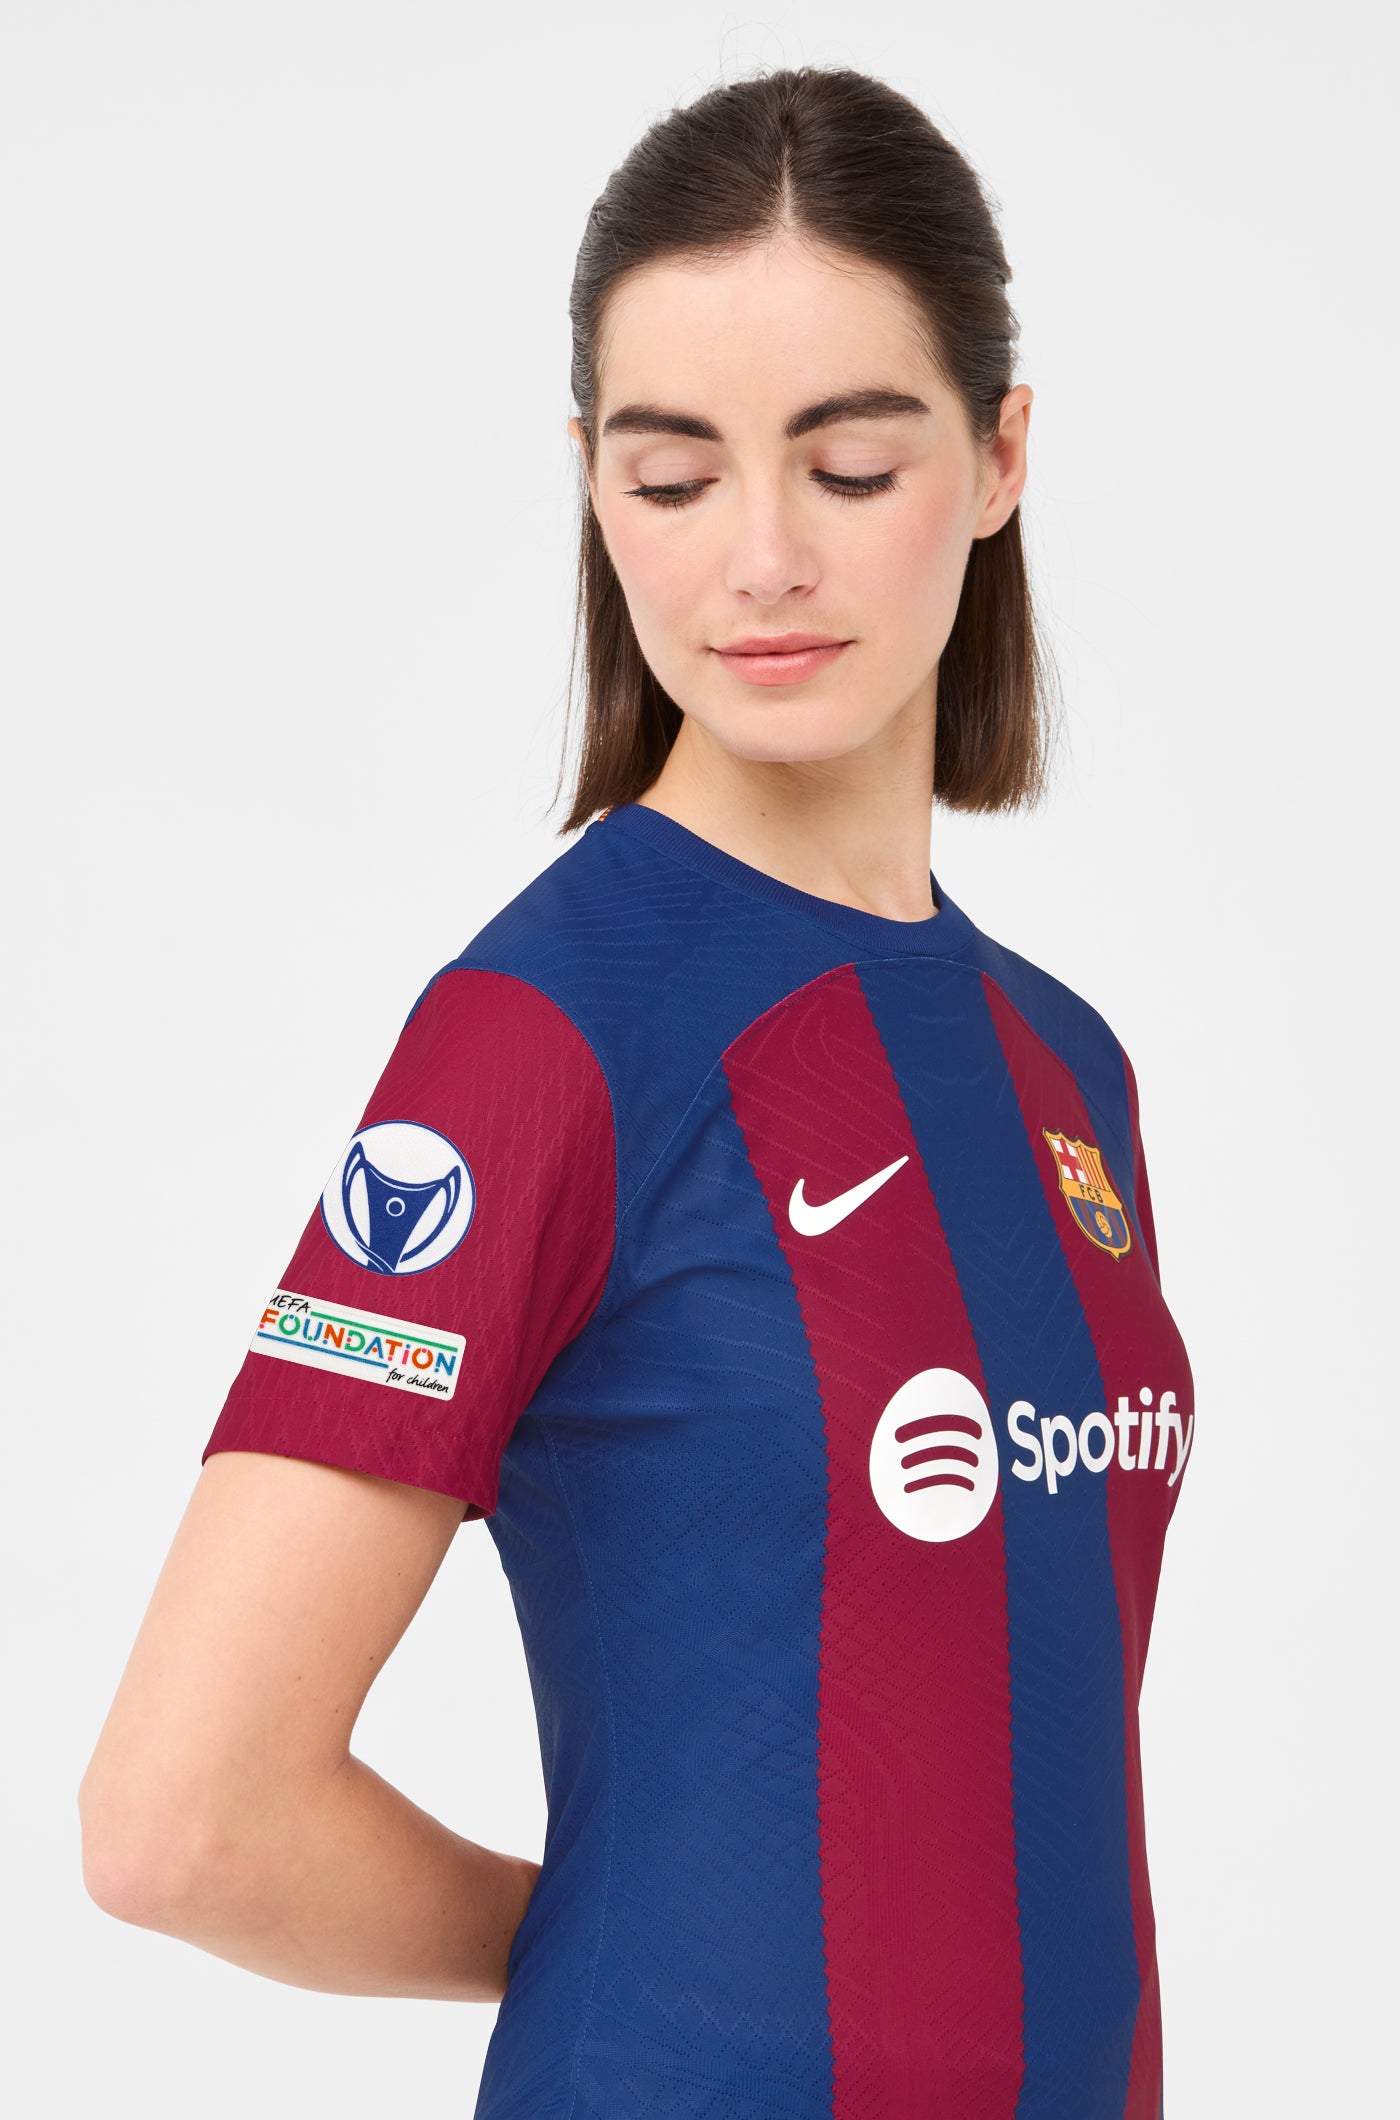 UWCL Camiseta primera equipación FC Barcelona 23/24 Edición Jugador - Mujer - BRONZE